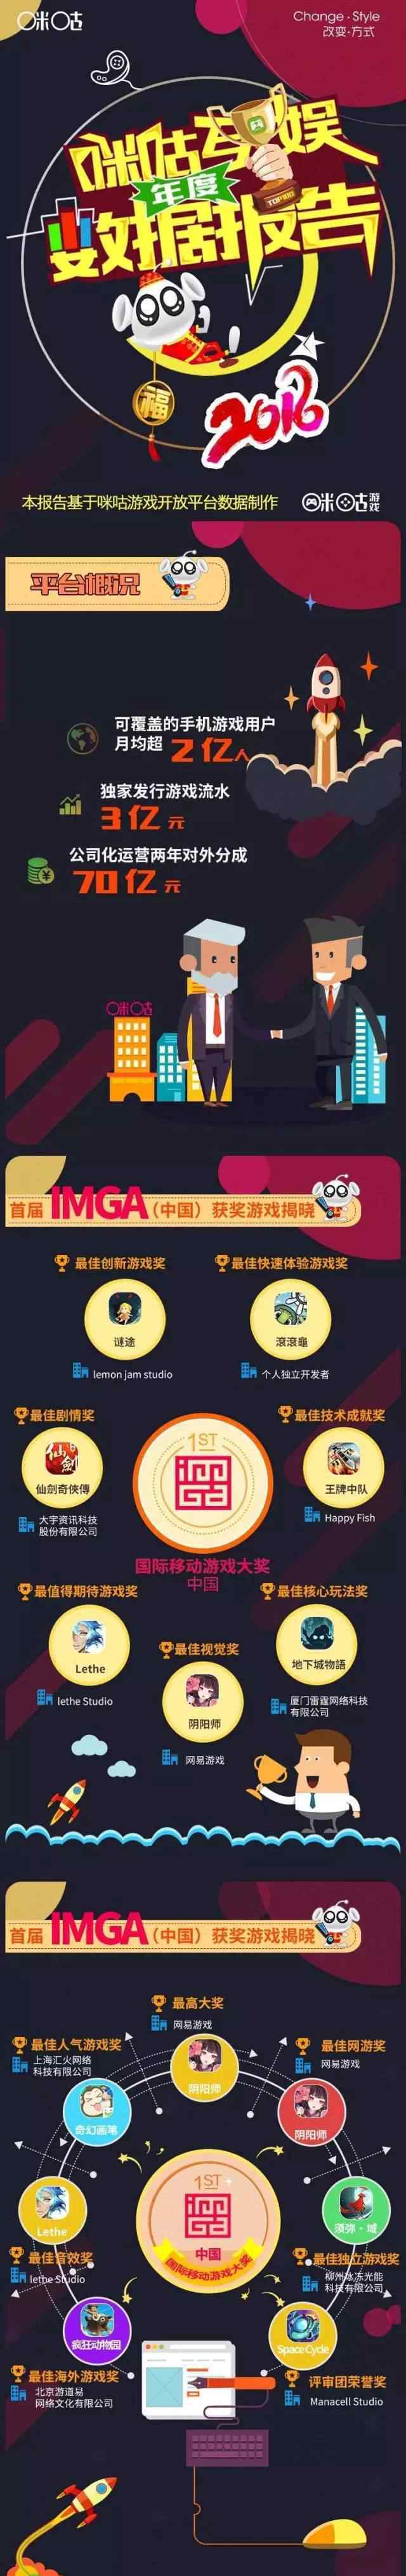 咪咕游戏 中国移动咪咕游戏2016年度数据报告